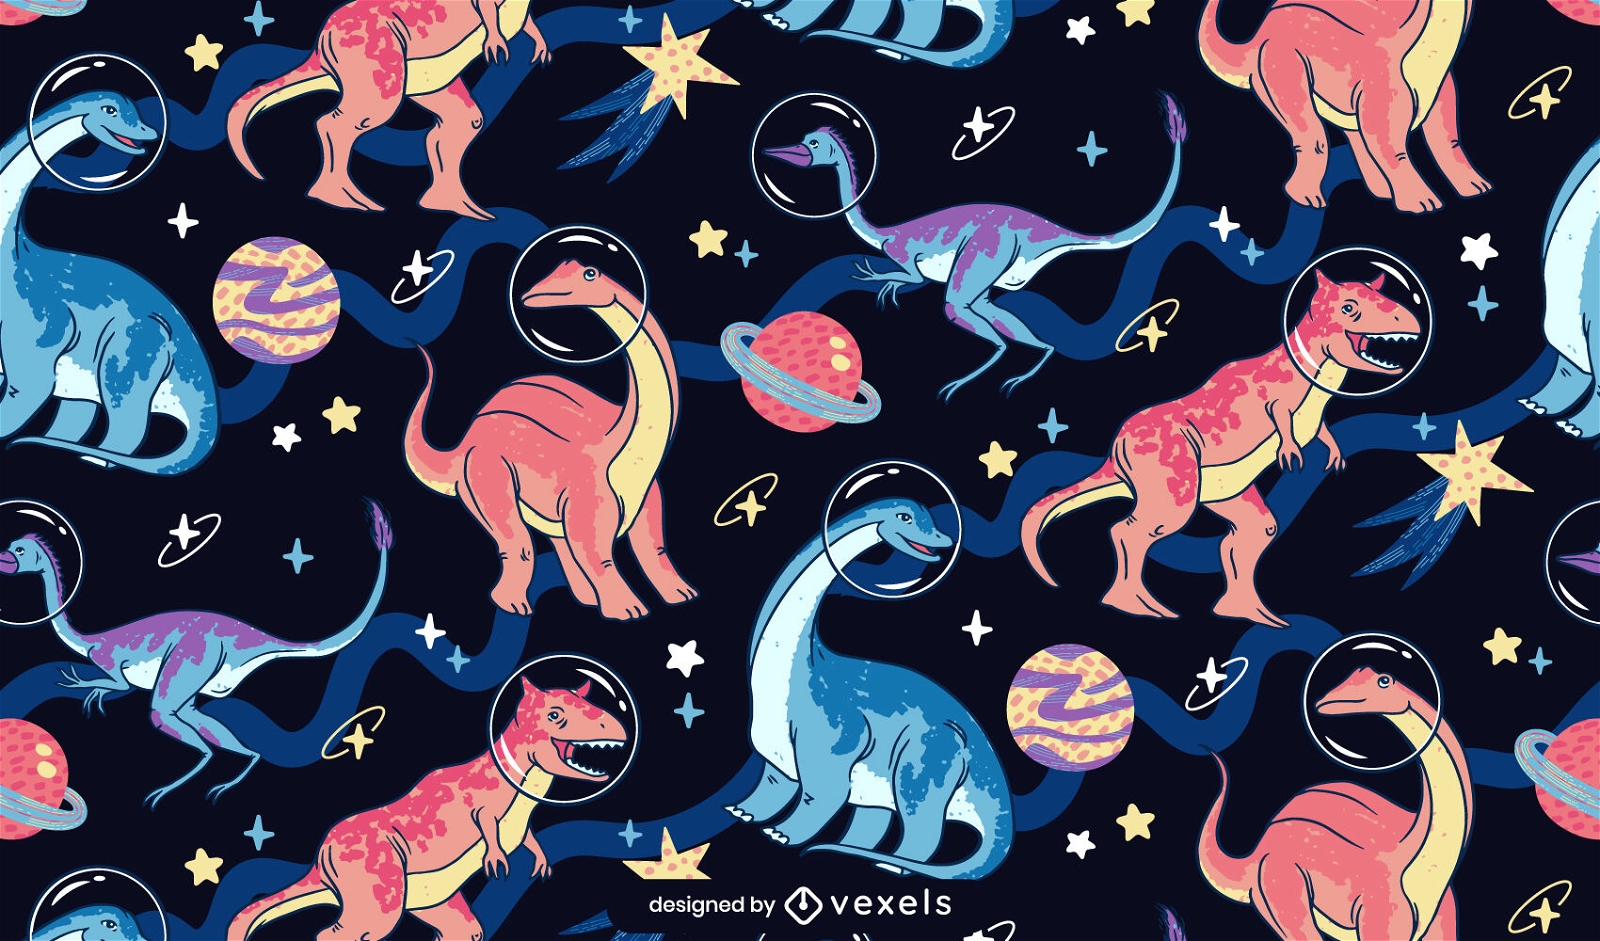 Dise?o de patrones de dinosaurios en el espacio.